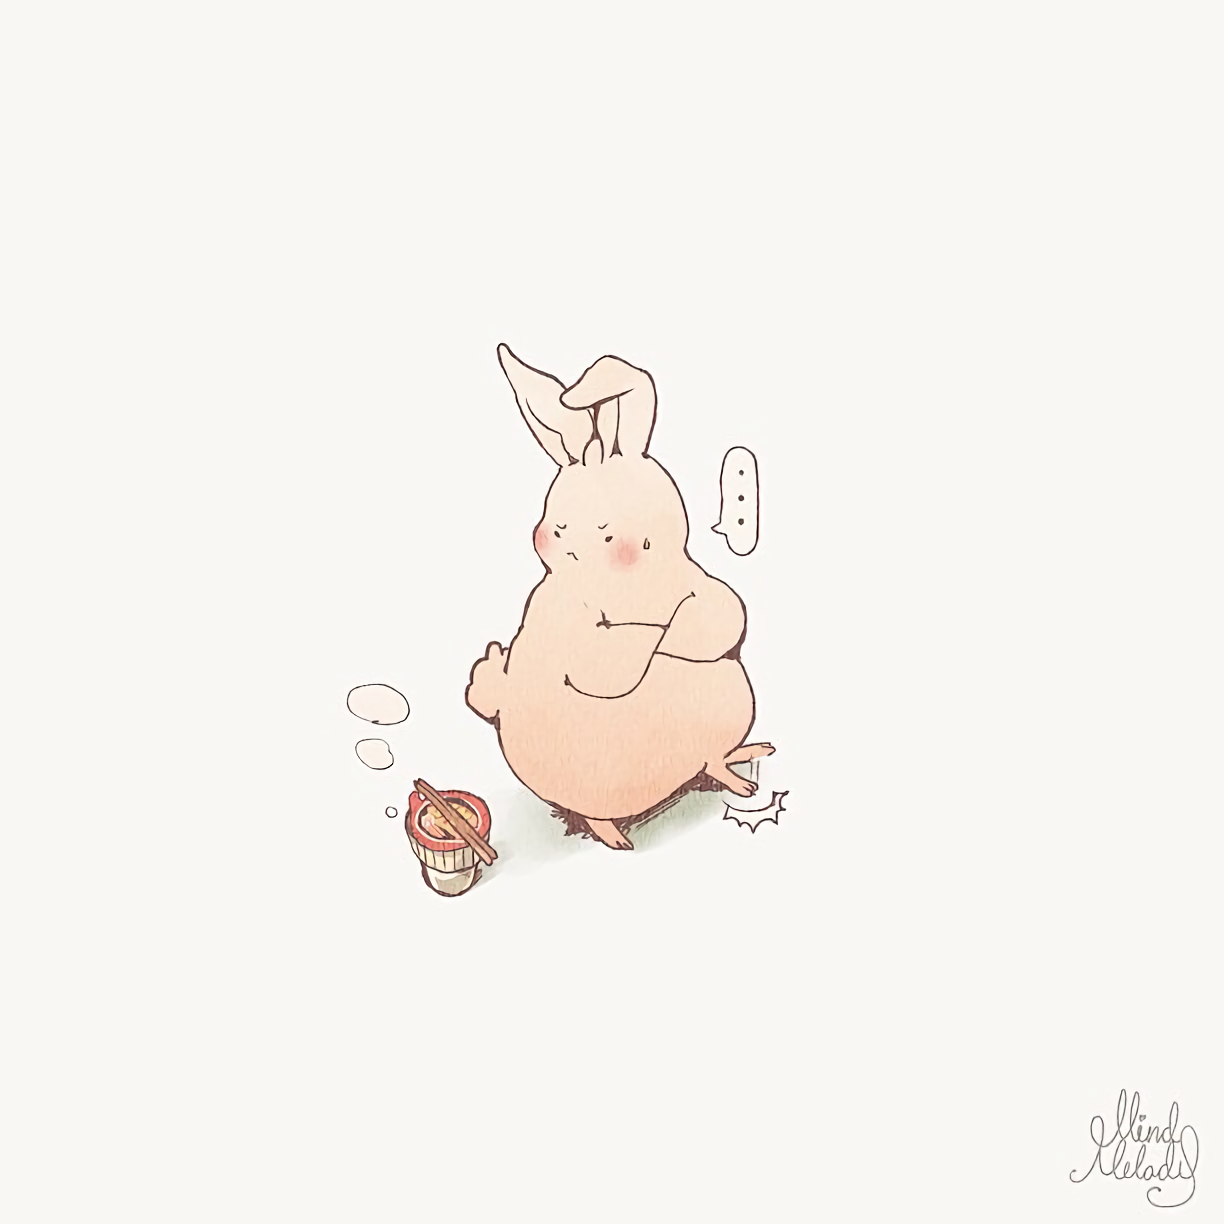 创作的系列动物插画《joojee & friends》中的主人公胖兔子joojee